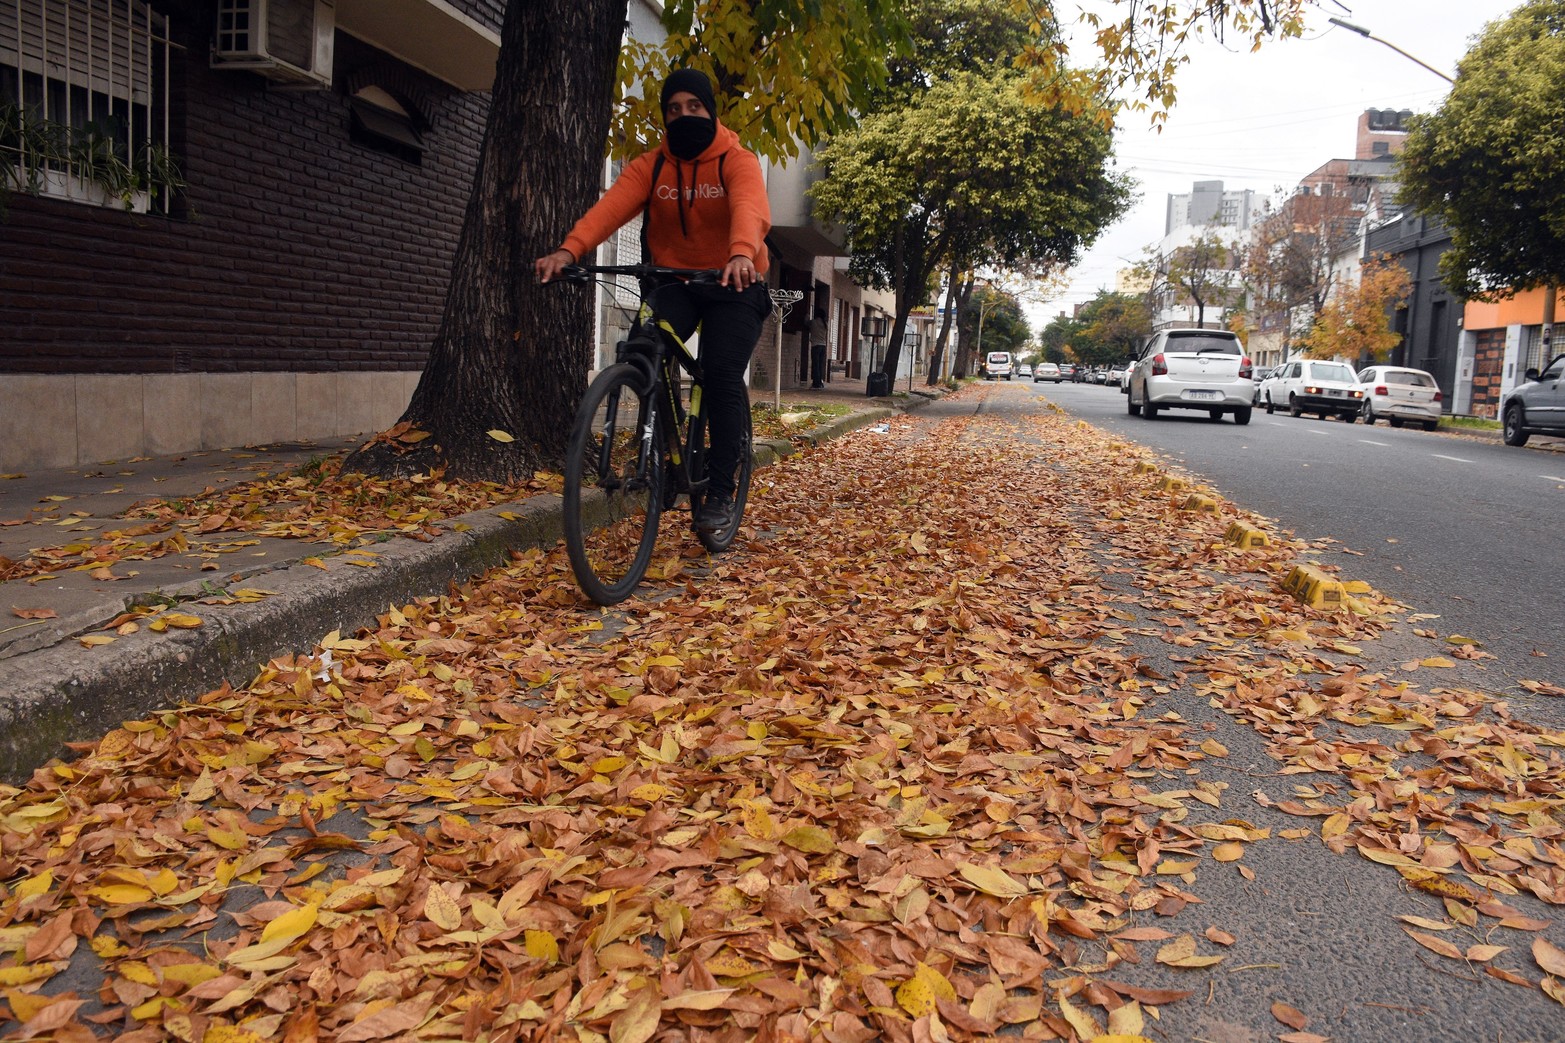 Los fresnos le dan vida al otoño. Es una de las caducifolias que pueblan la ciudad, sus hojas ocre alfombran las veredas y llenan de color los primeros días de frío.